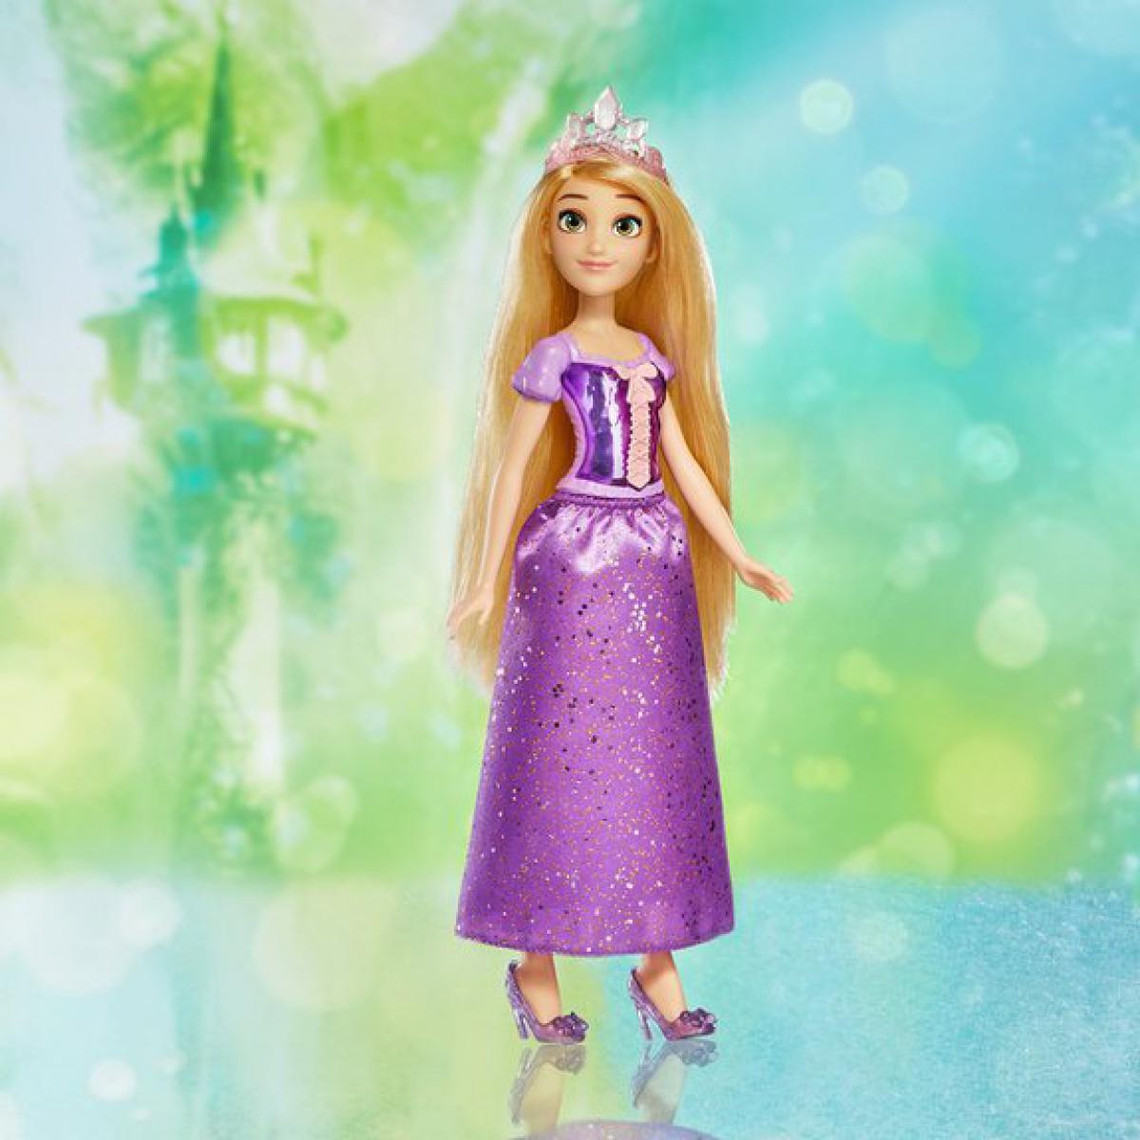 Poupée Disney : Princesse Raiponce, Disney